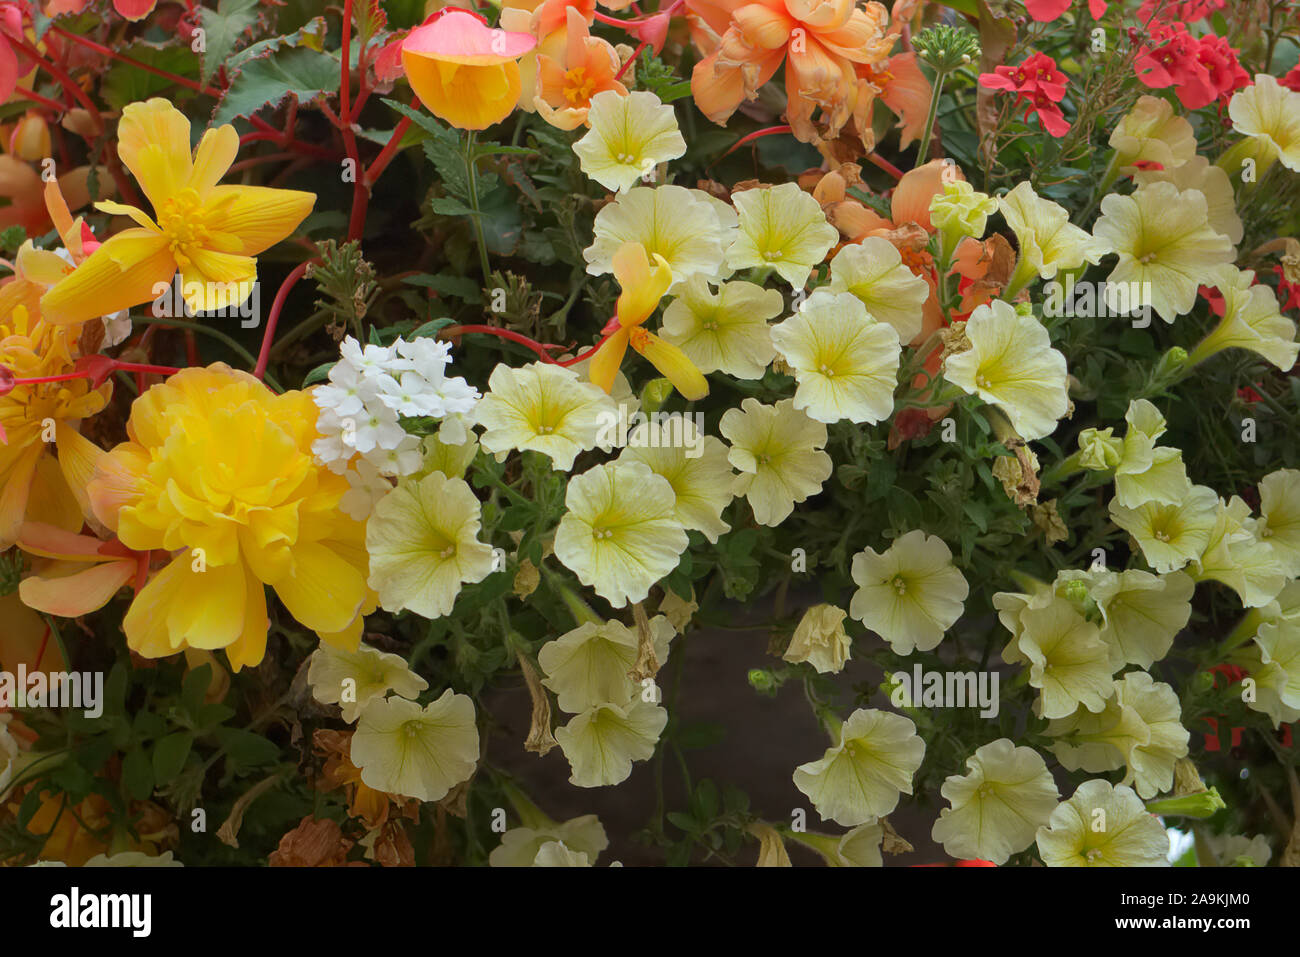 Blumenampel amenity Pflanzungen mit sorgfältig aufeinander abgestimmten Farben - Petunia surfinia 'Yellow Dream', Eisenkraut - Weiß, Diascea - Lachs, Begonia - Rot Stockfoto